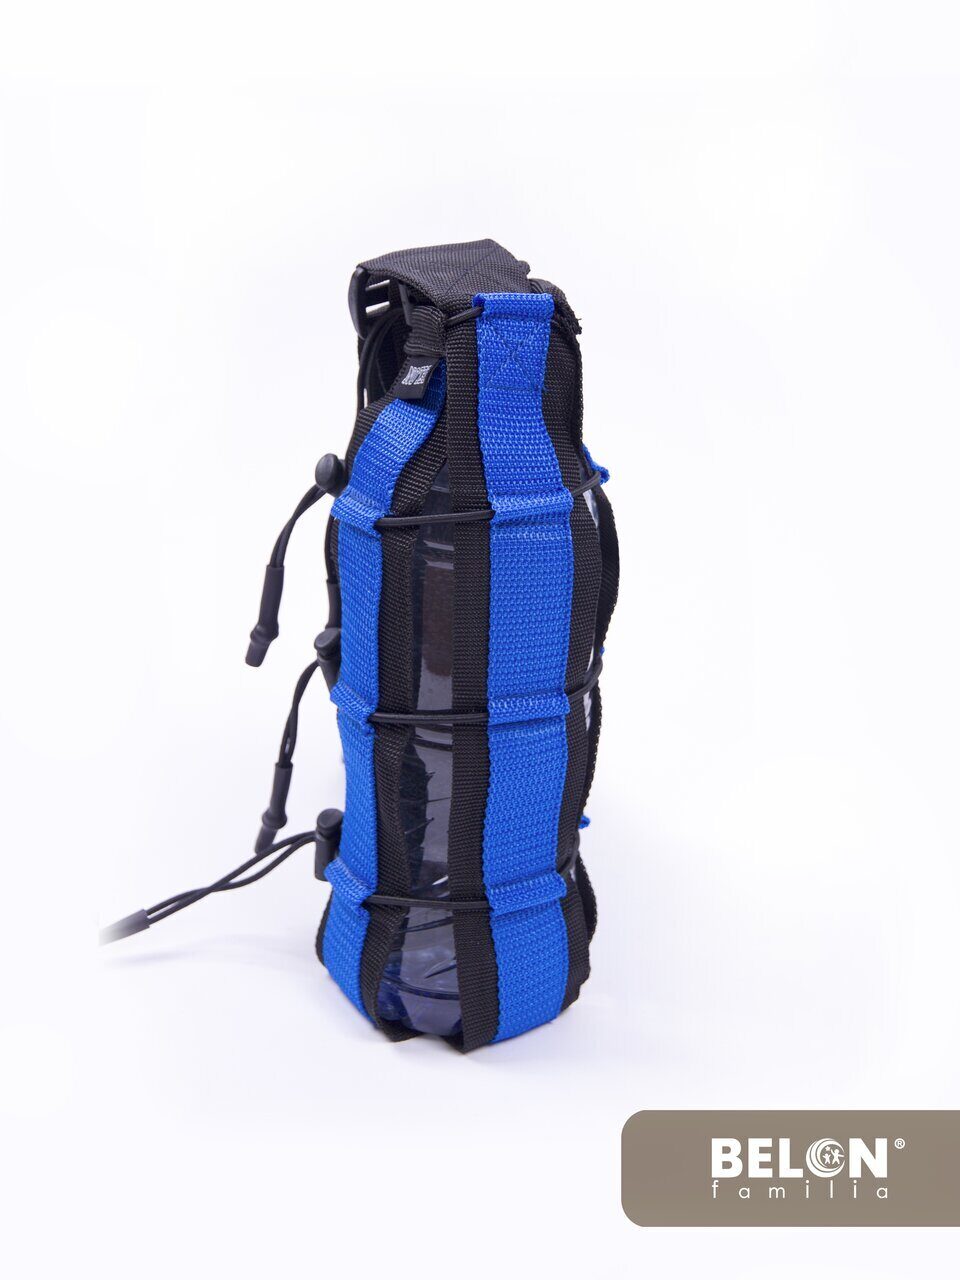 Спортивно-туристическая сумка для бутылки Belon familia стропа цвет синий